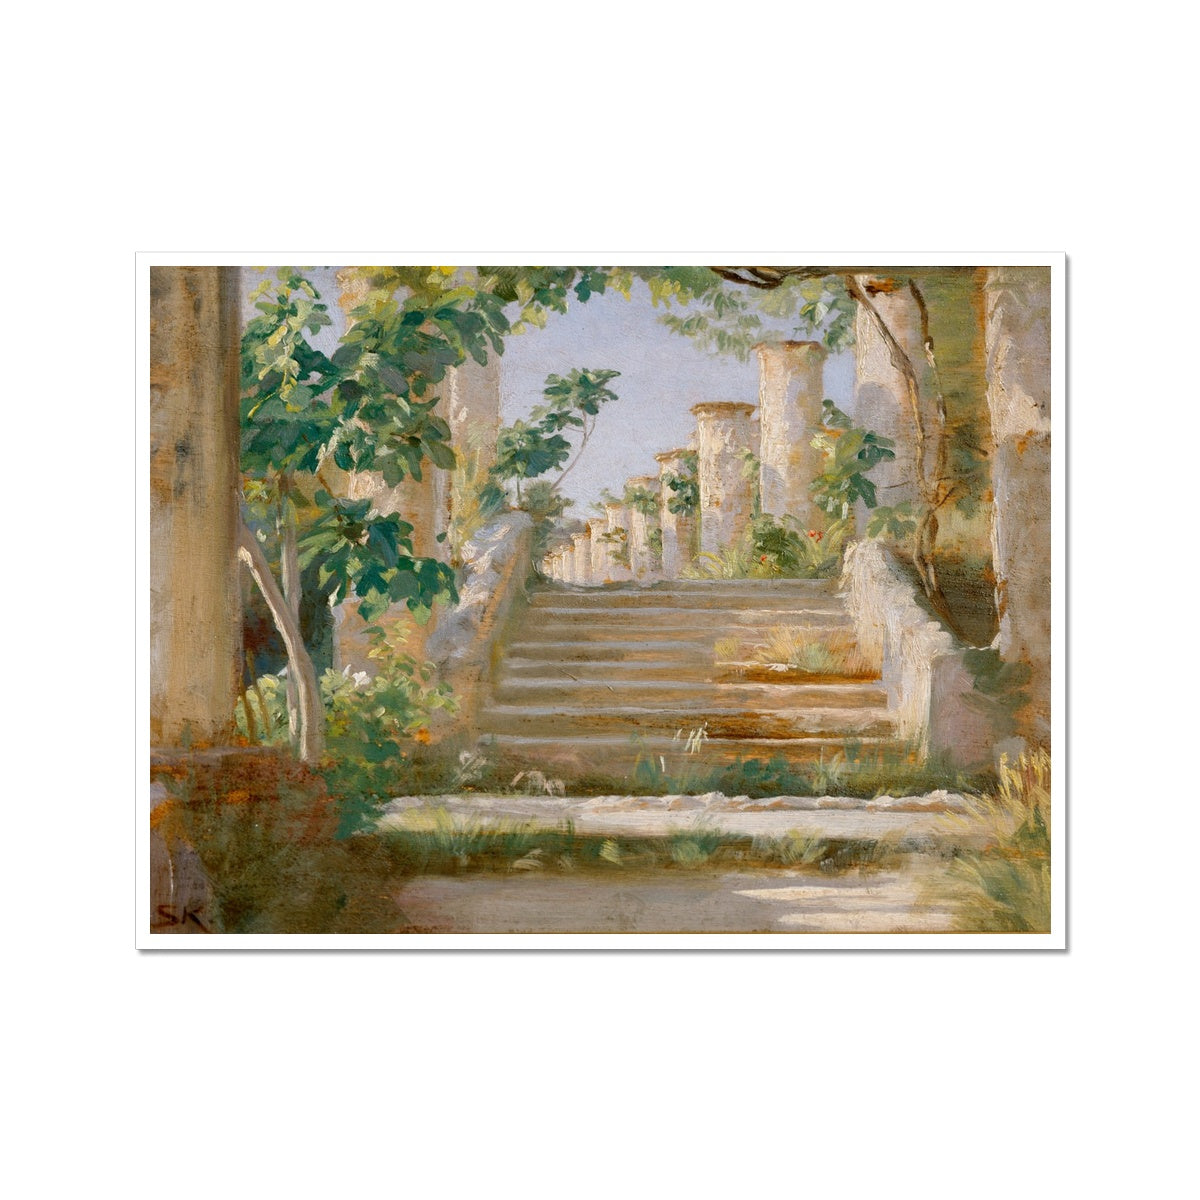 Loggia in Ravello by Peder Severin Krøyer | Buy Fine Art Prints Online –  Peaceful Artworks